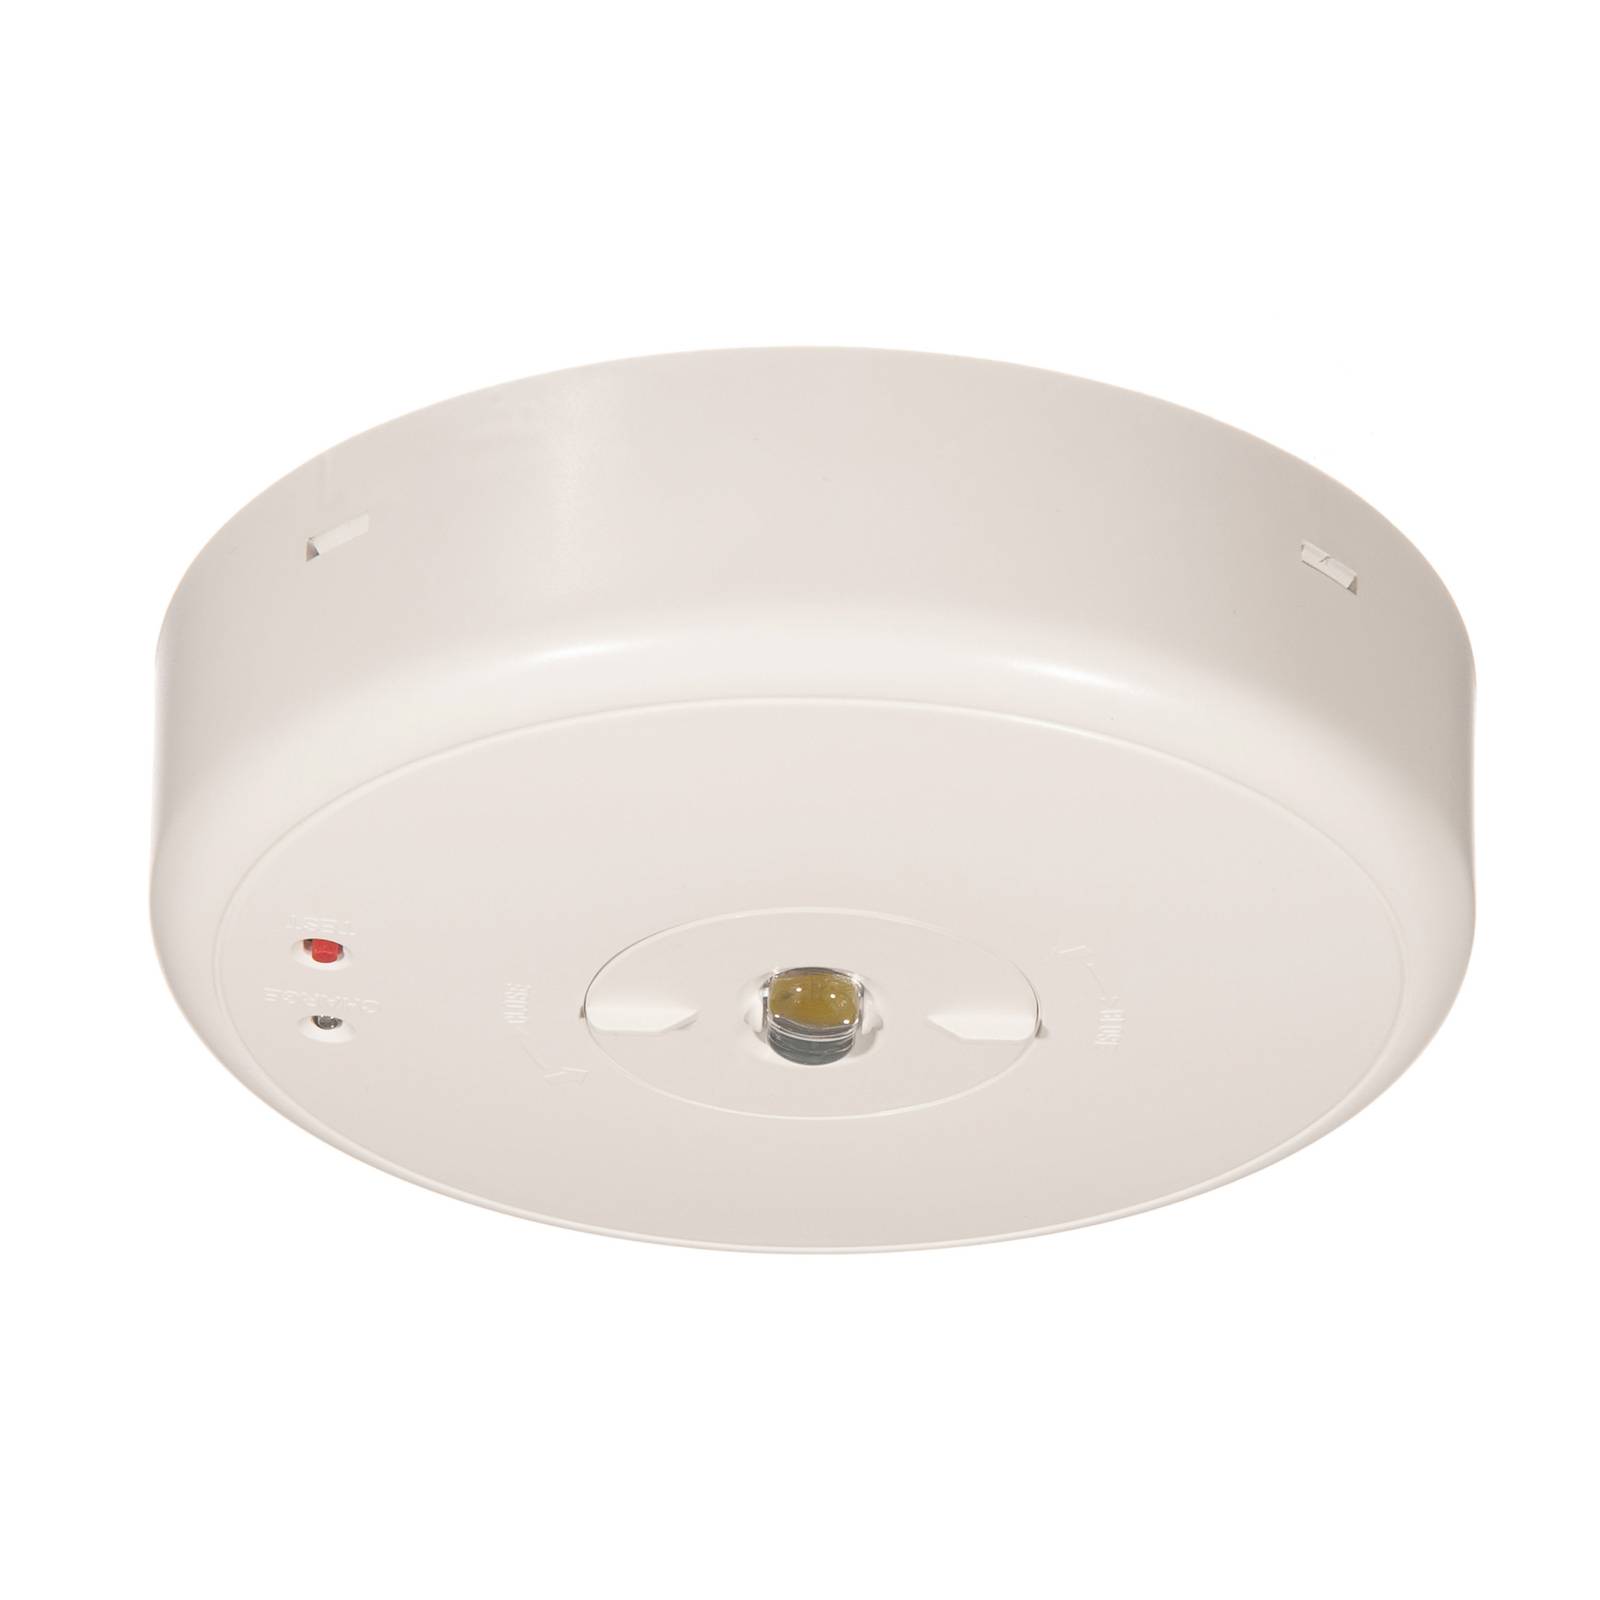 Image of Lampe de sécurité S-LUX Standard pour plafond 4251138210809